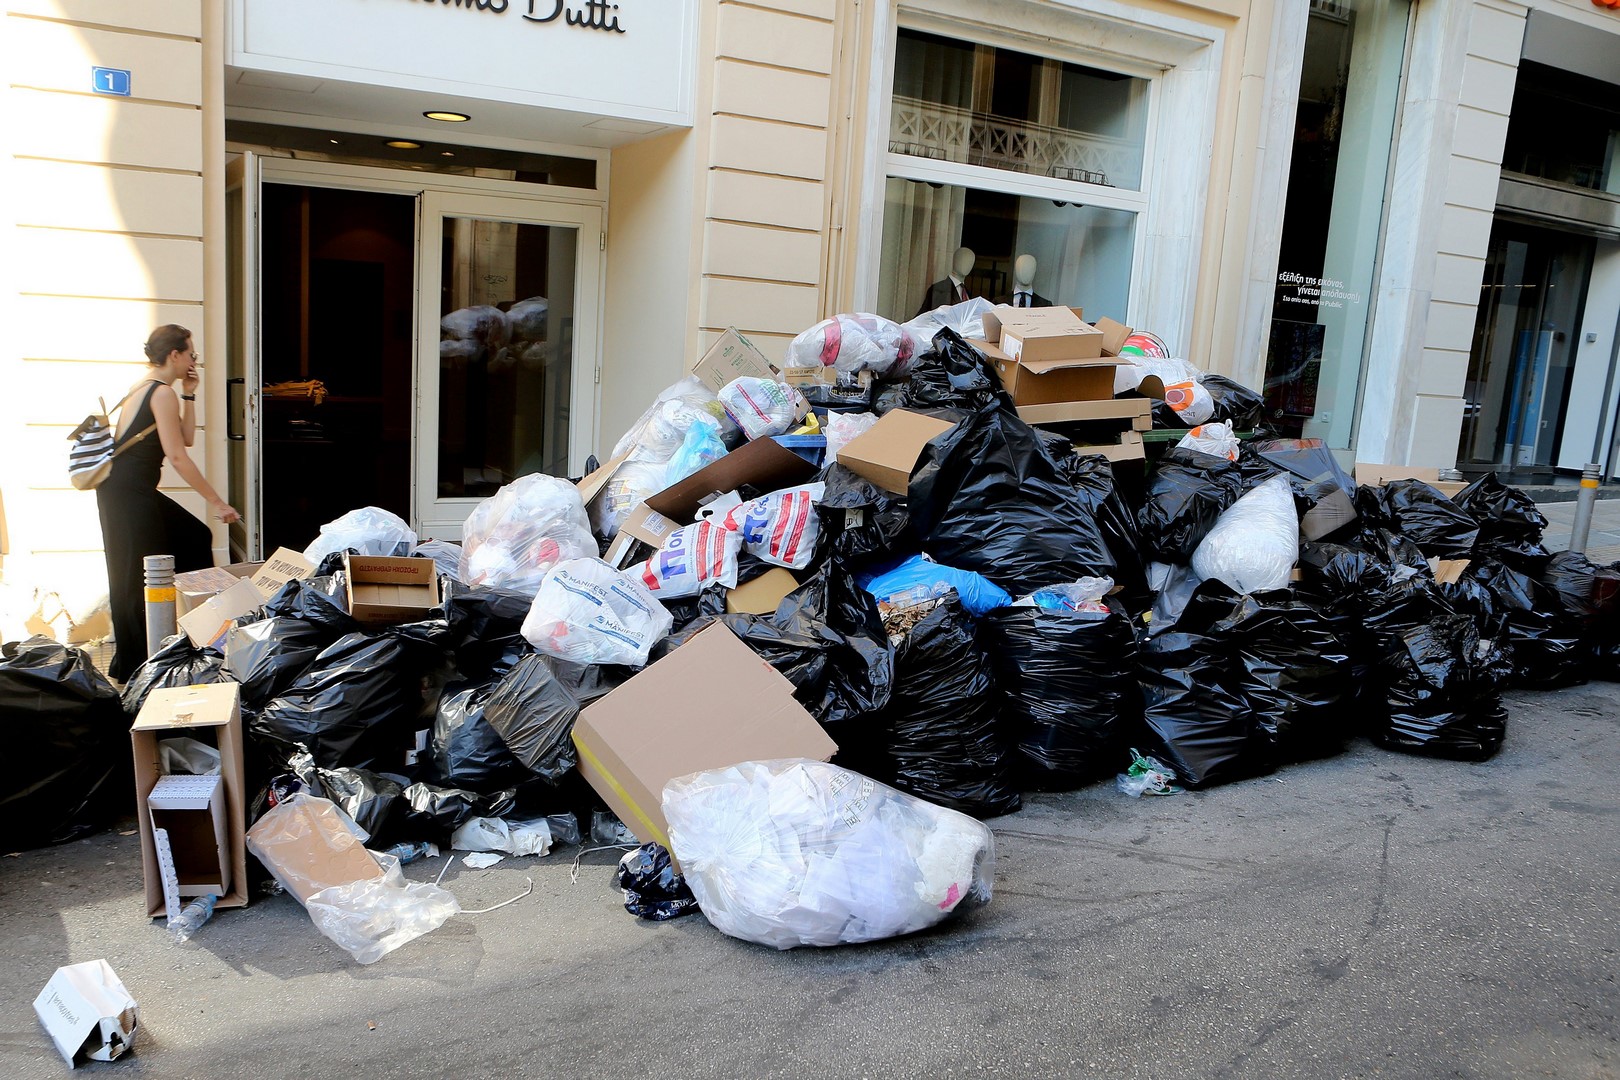 Gobierno griego afirma que tomará medidas tras huelga de basureros